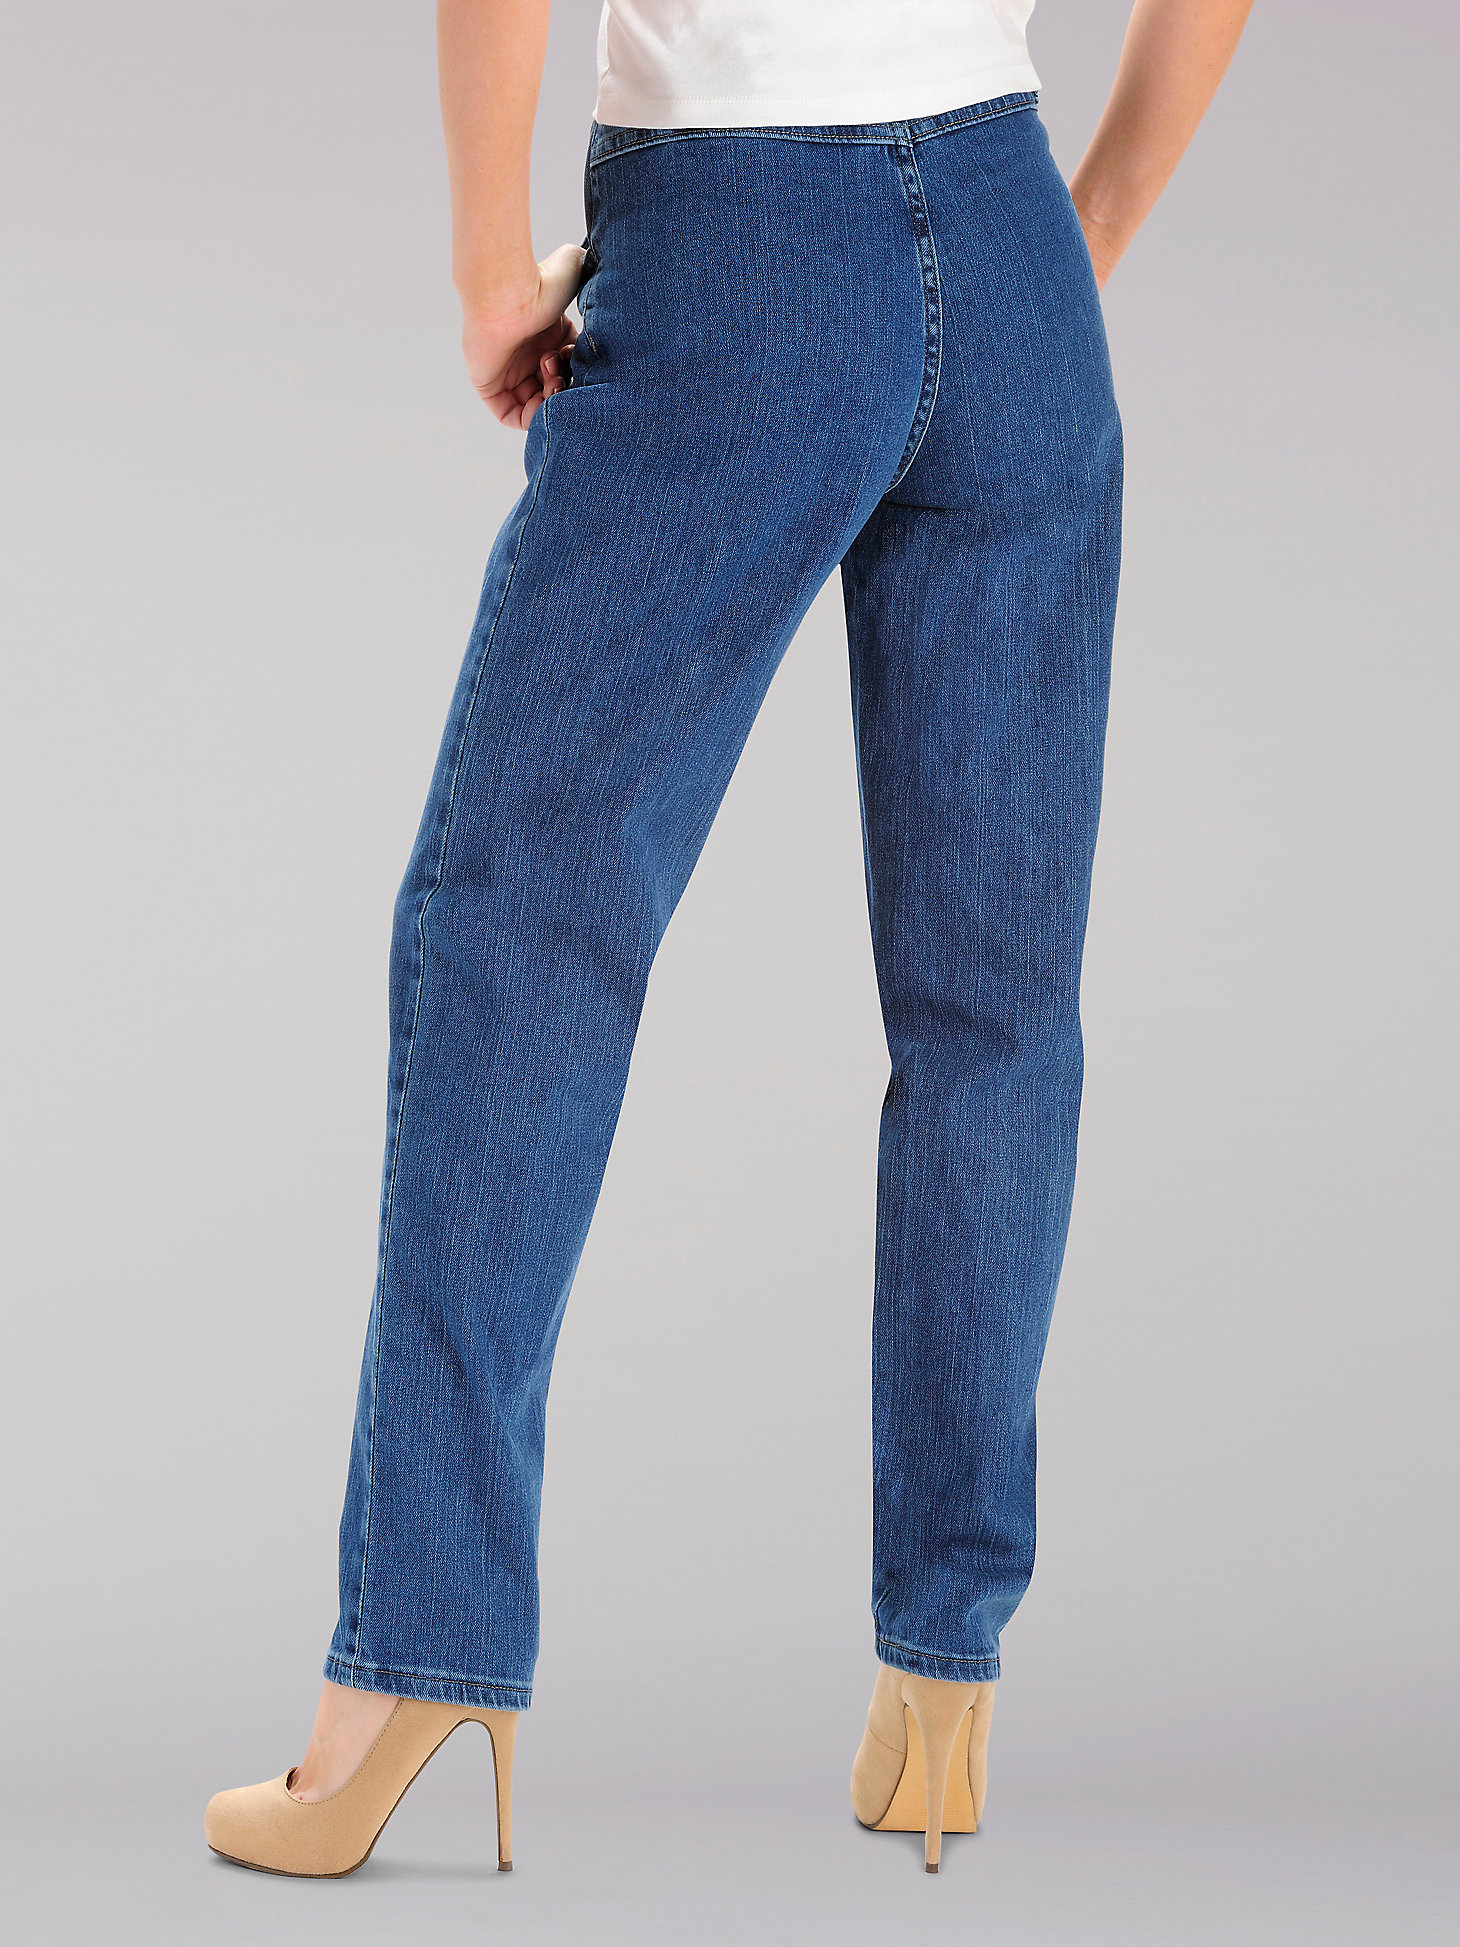 Women's Side Elastic Jean (Petite) in Pepperstone alternative view 1